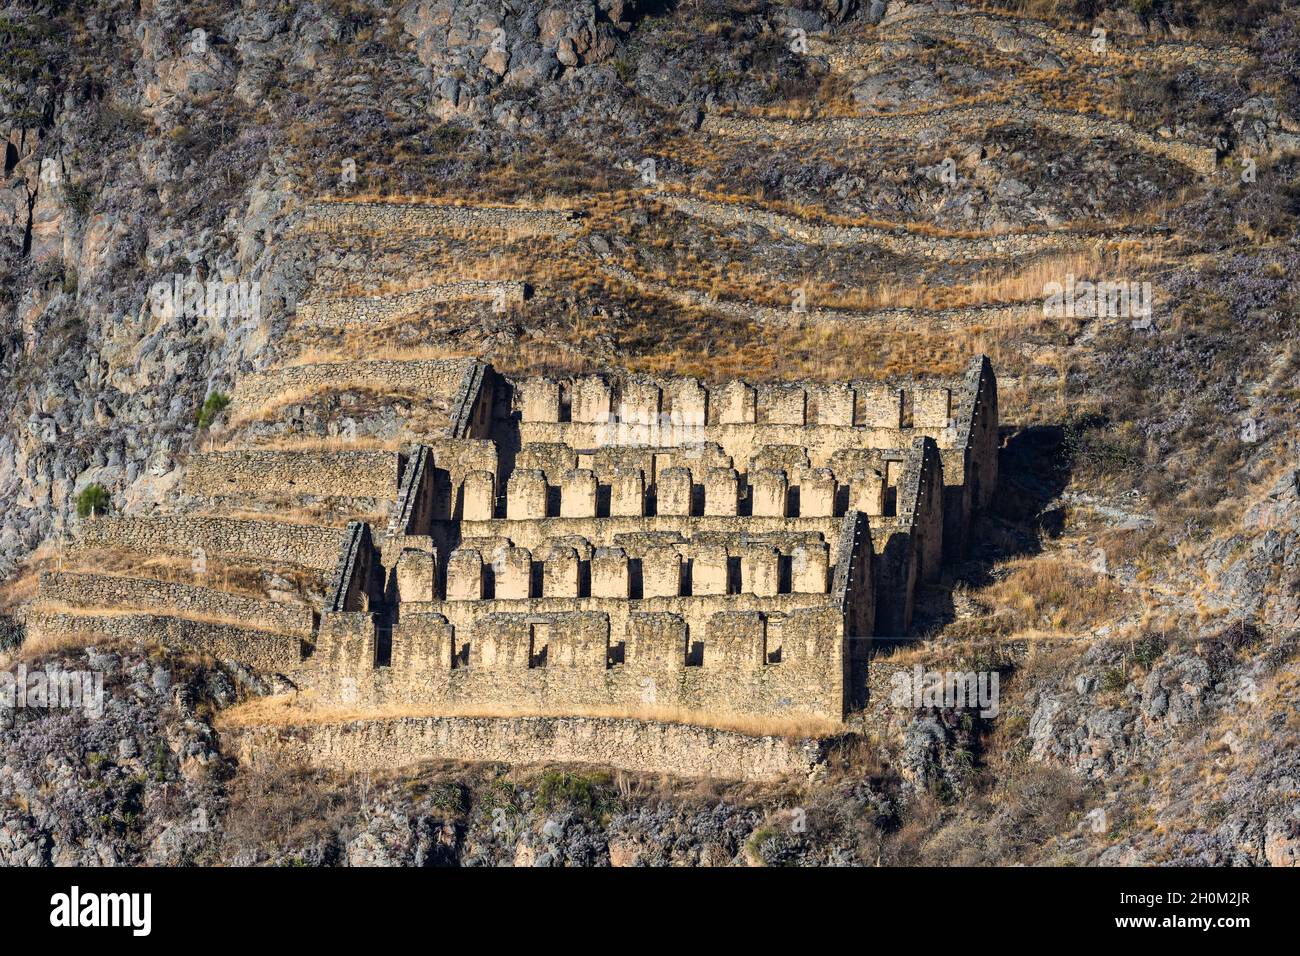 Murs de pierre de la ruine inca près de Ollantaytambo, Cuzco, Pérou.Amérique du Sud. Banque D'Images